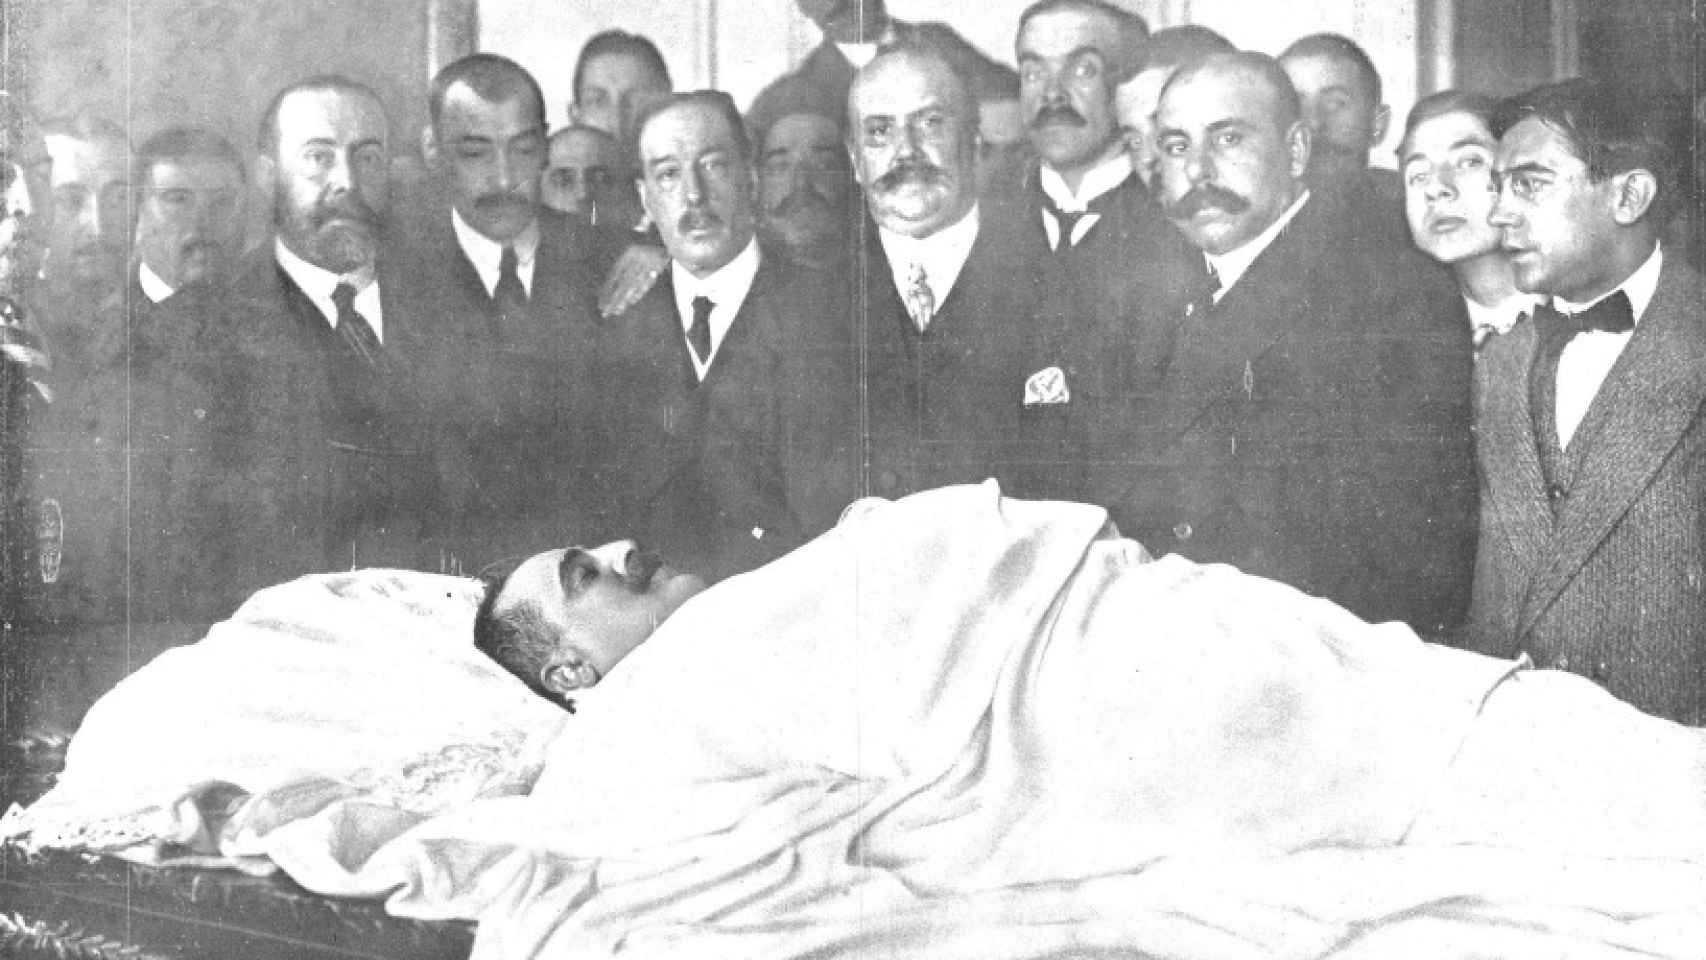 El cadáver del asesinado presidente Canalejas en el Ministerio de la Gobernación.